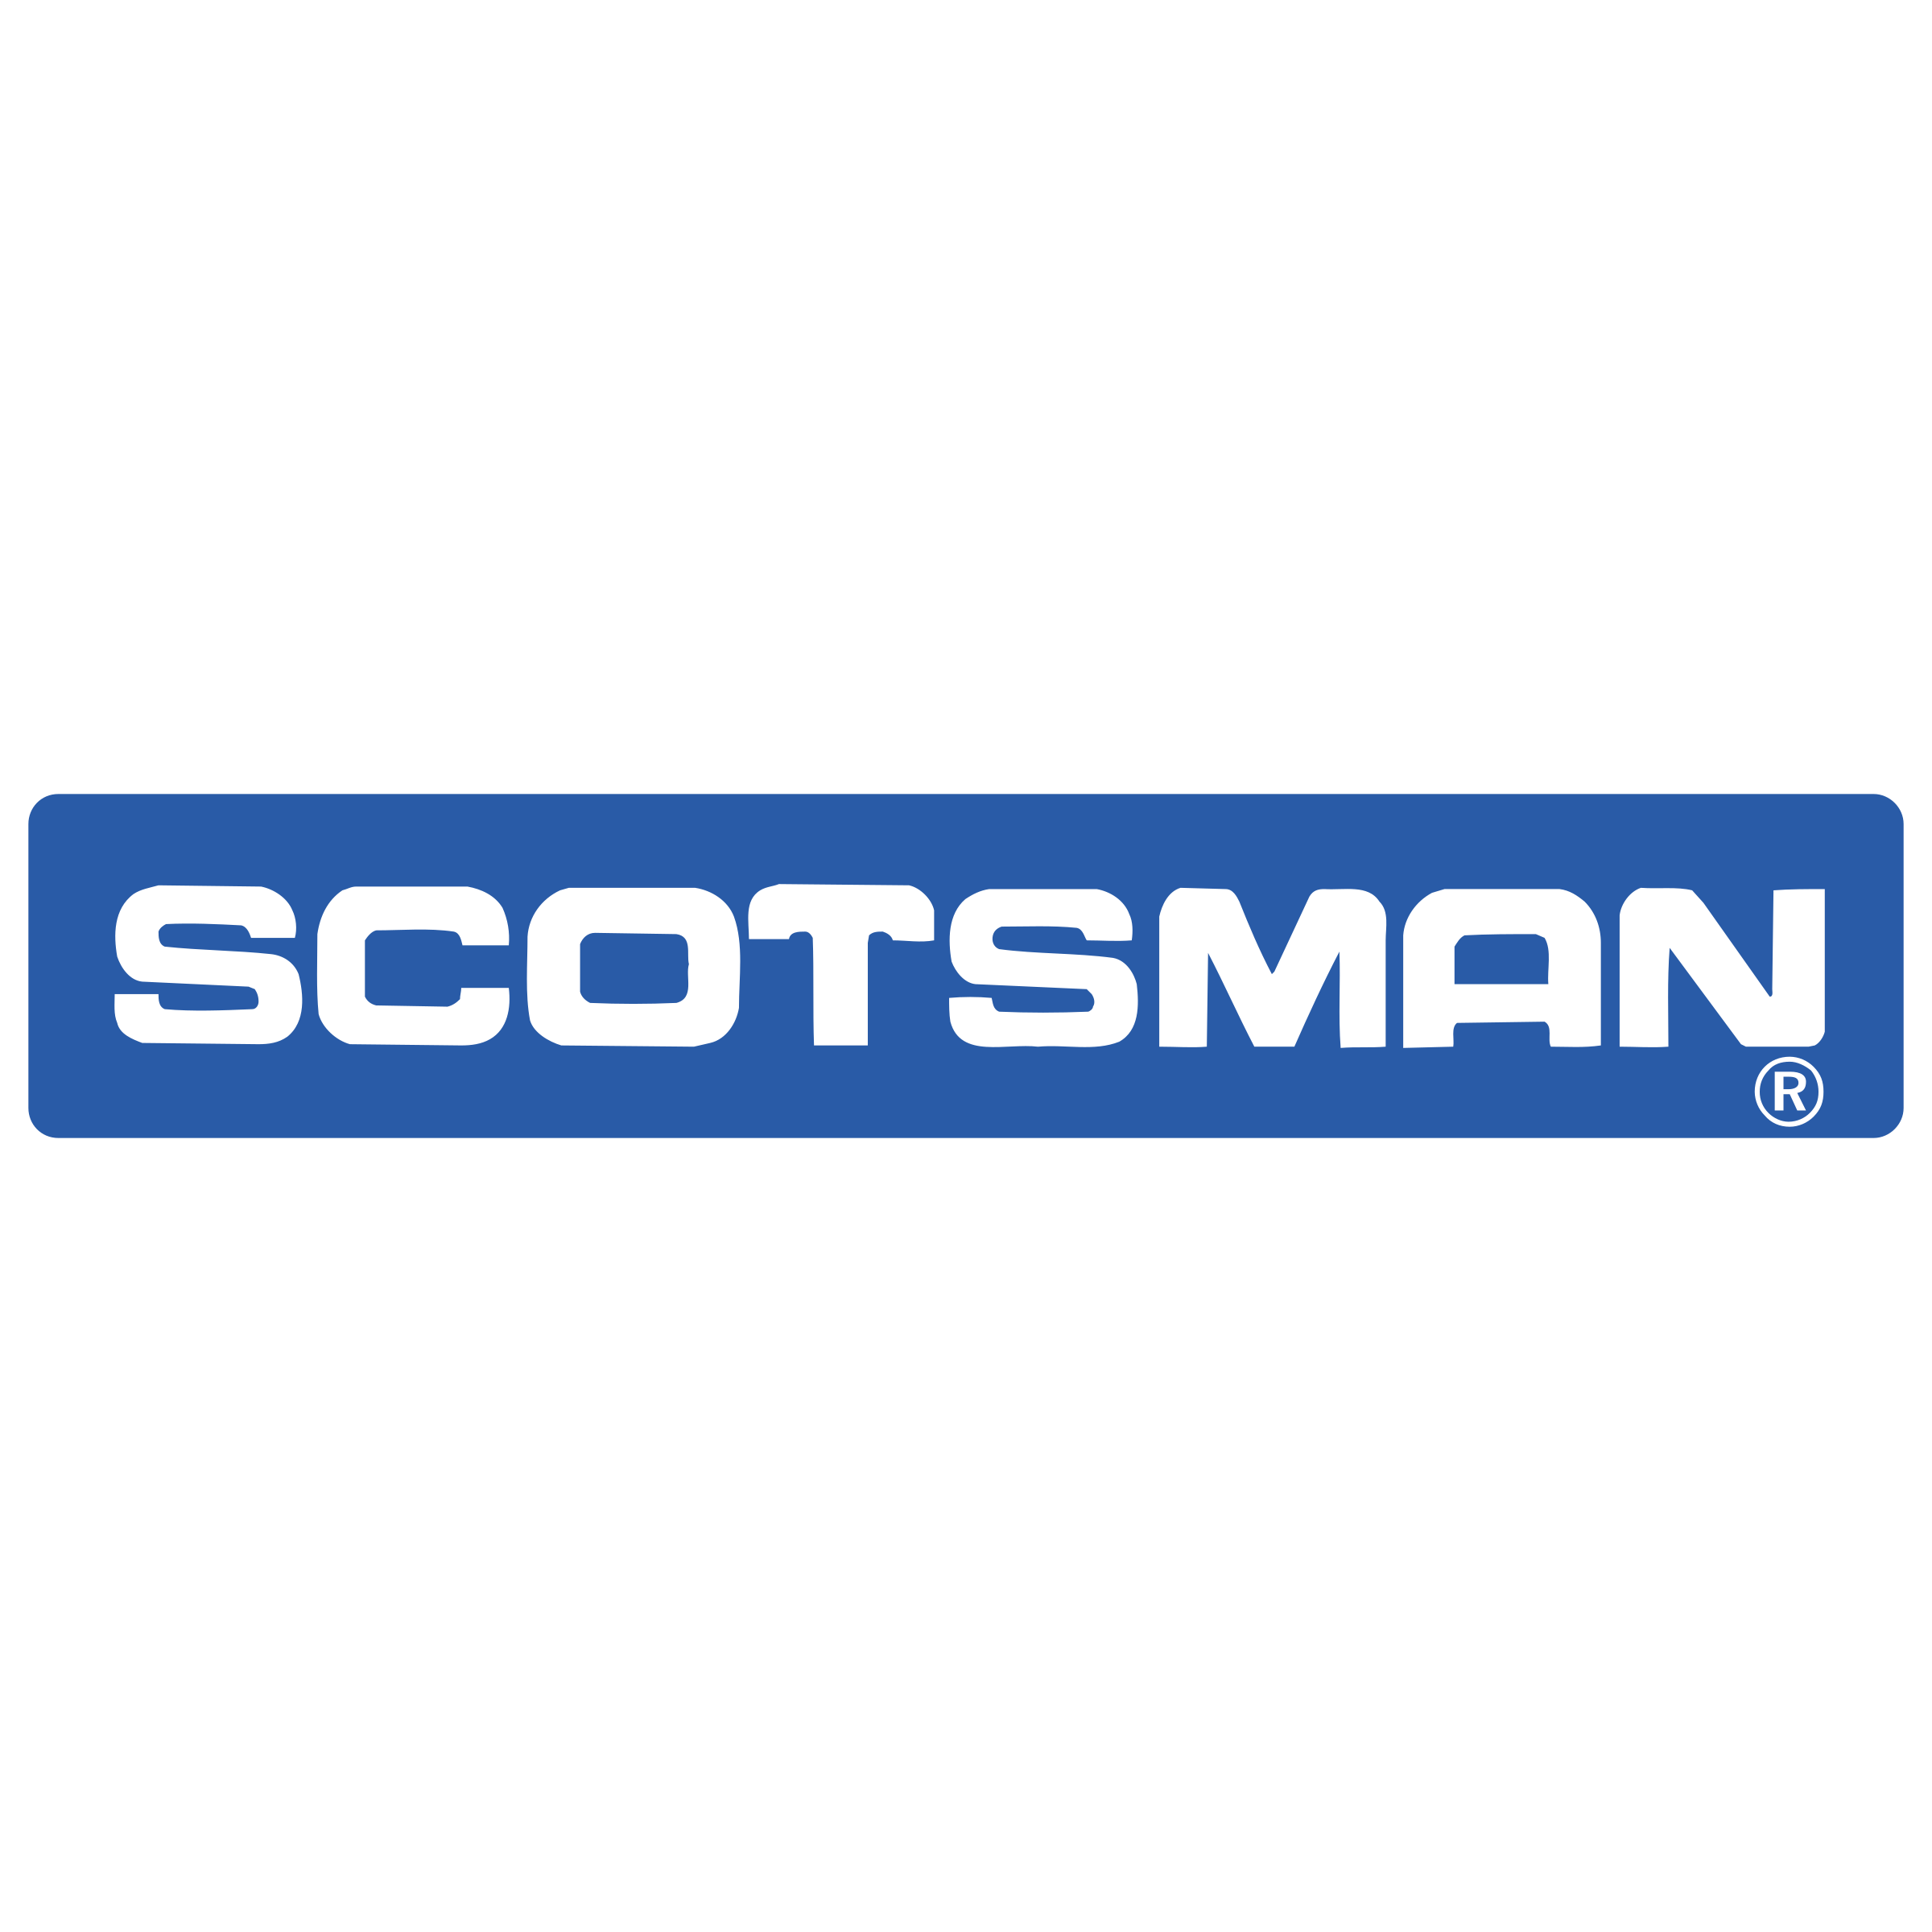 scotsman-manitowoc-taylor-frymaster-lincoln-bunn-fiyatlari-fiyati-ankara-turkso-teknik